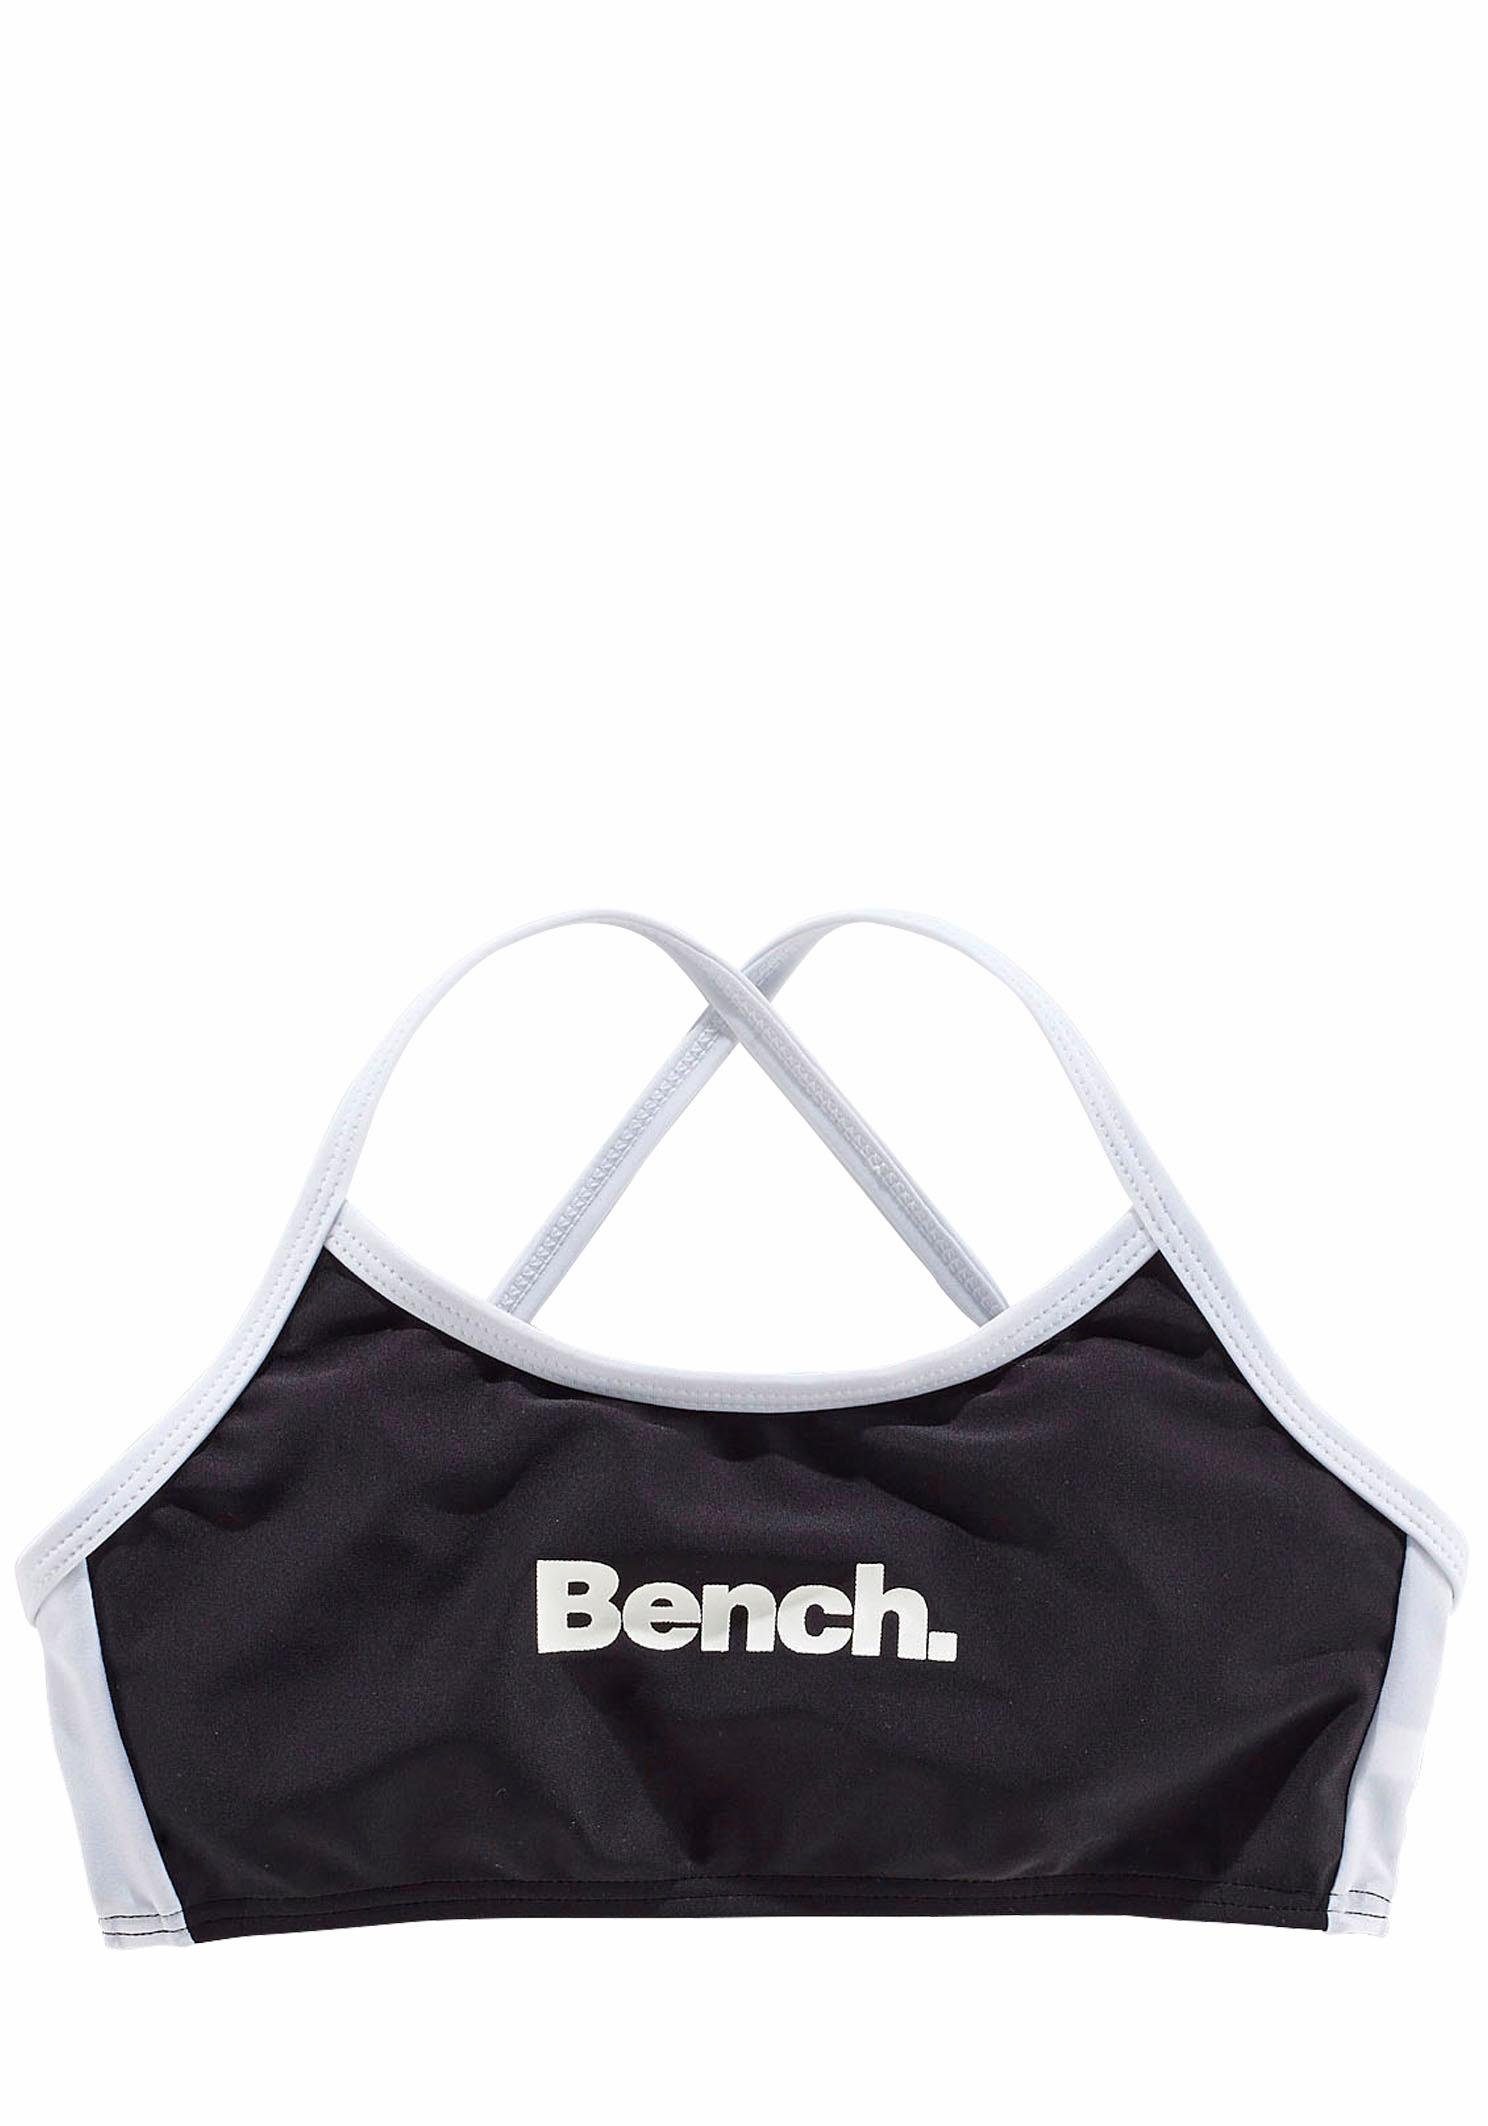 Bench. Bustier-Bikini gekreuzten mit schwarz-weiß Trägern